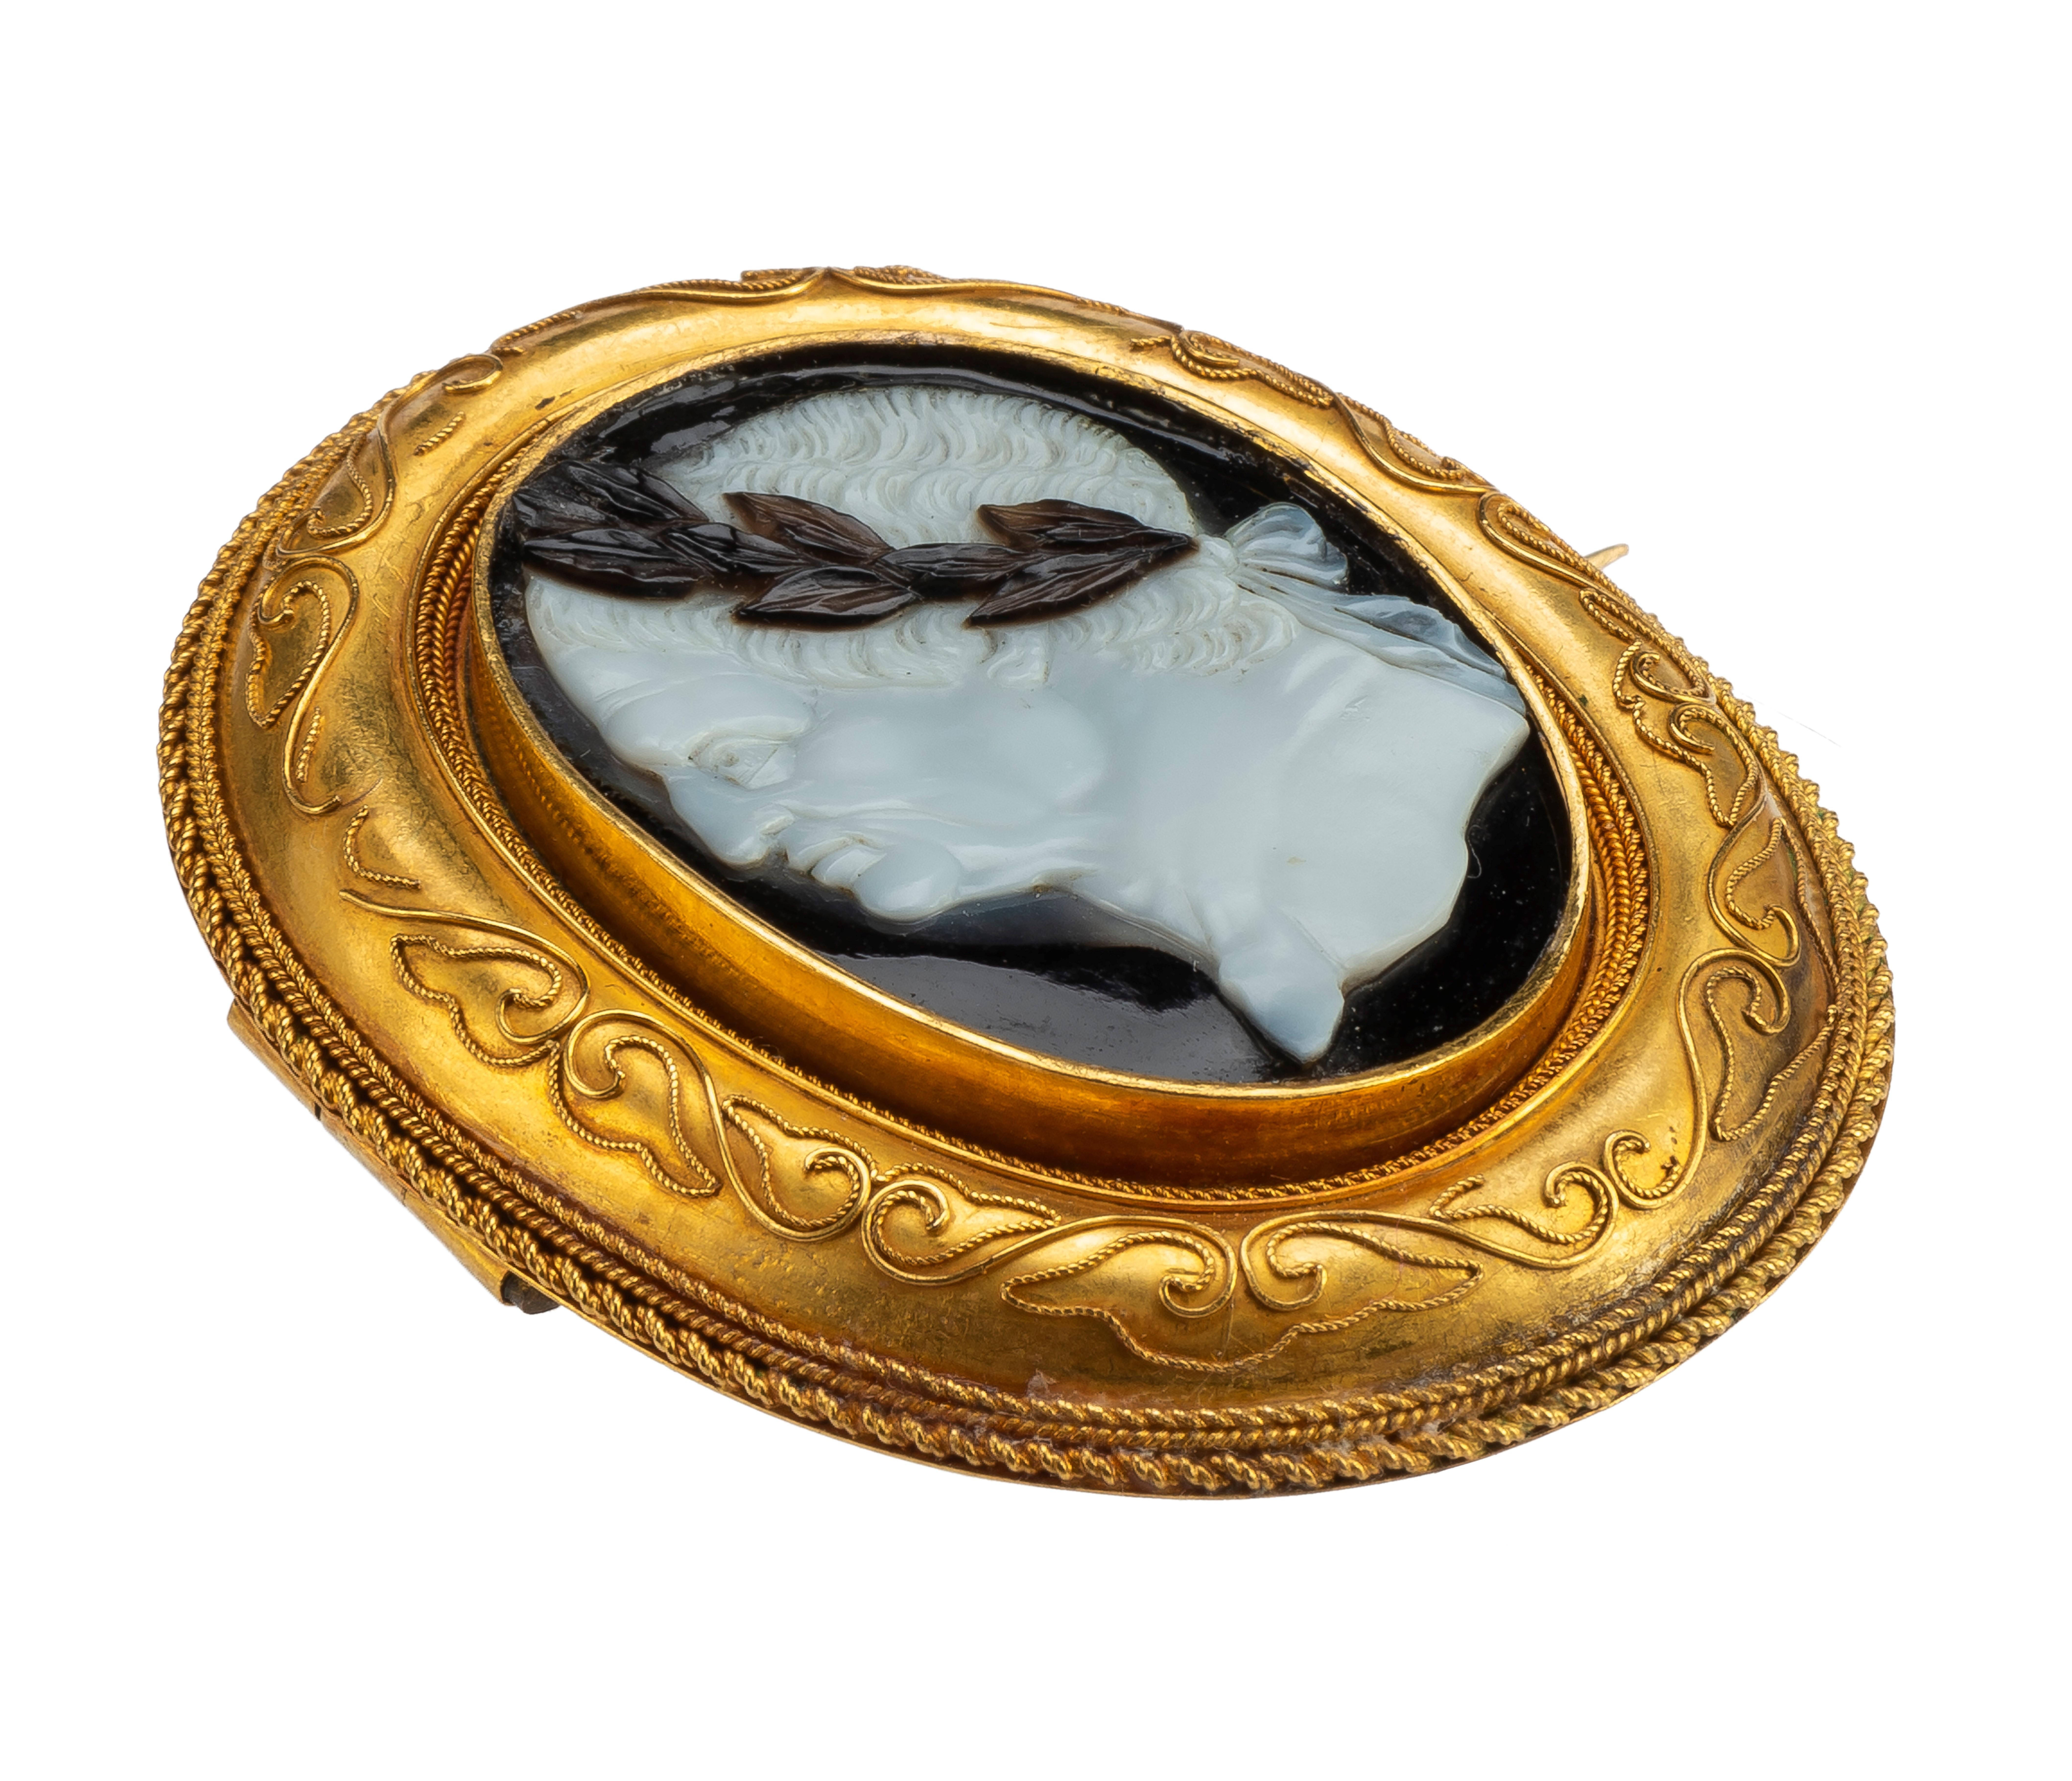 Porträtkamee des Kaisers Vespasian aus der Renaissance in einer Goldbrosche (Ungeschliffen) im Angebot